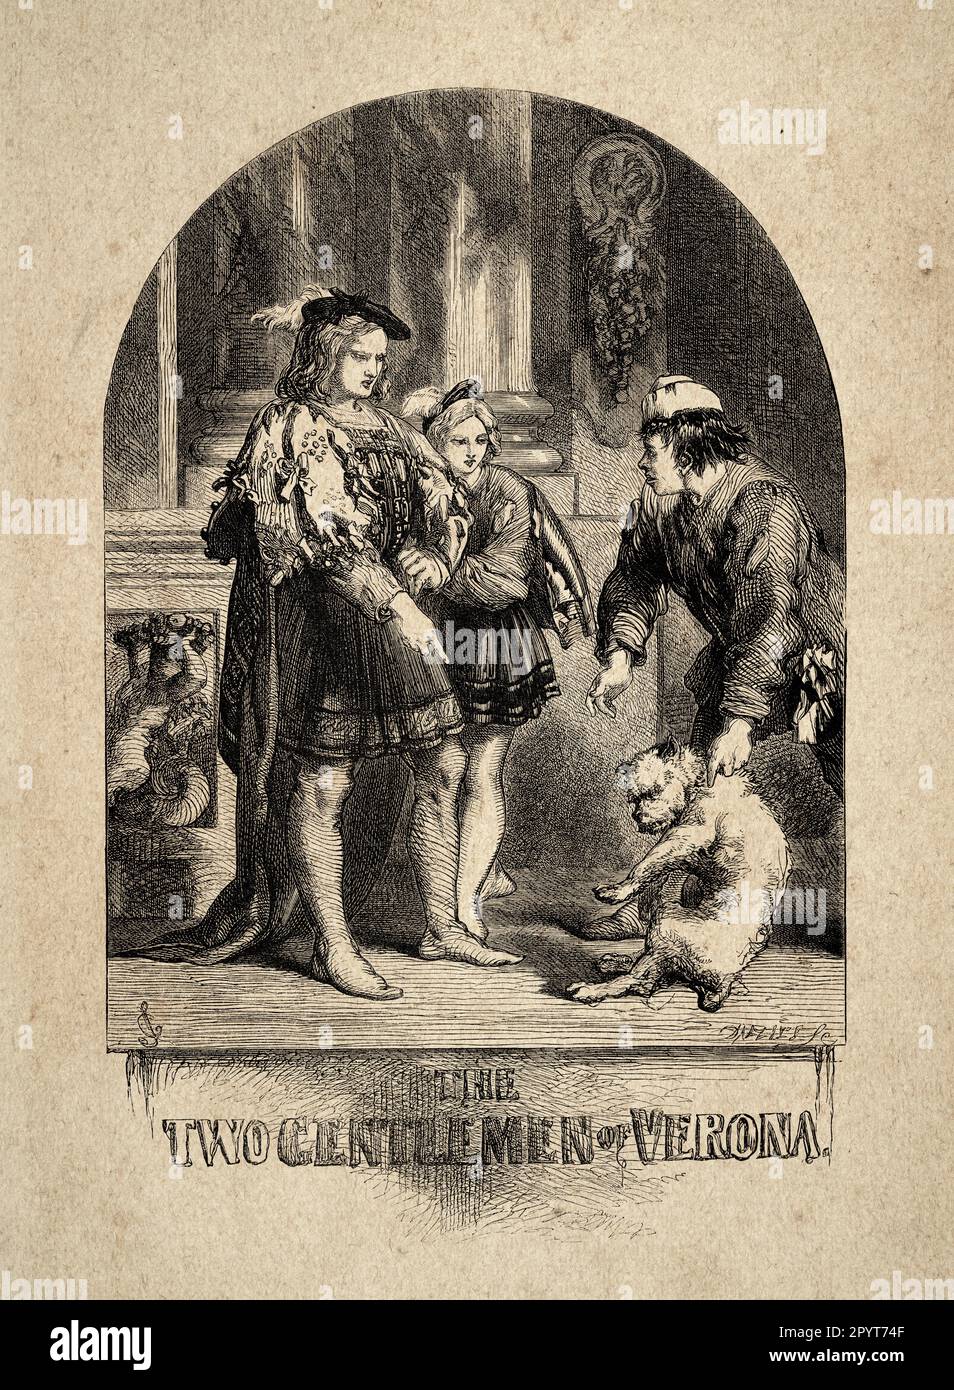 Illustration vintage scène des deux Messieurs de Vérone par William Shakespeare, par John Gilbert 19th siècle Banque D'Images